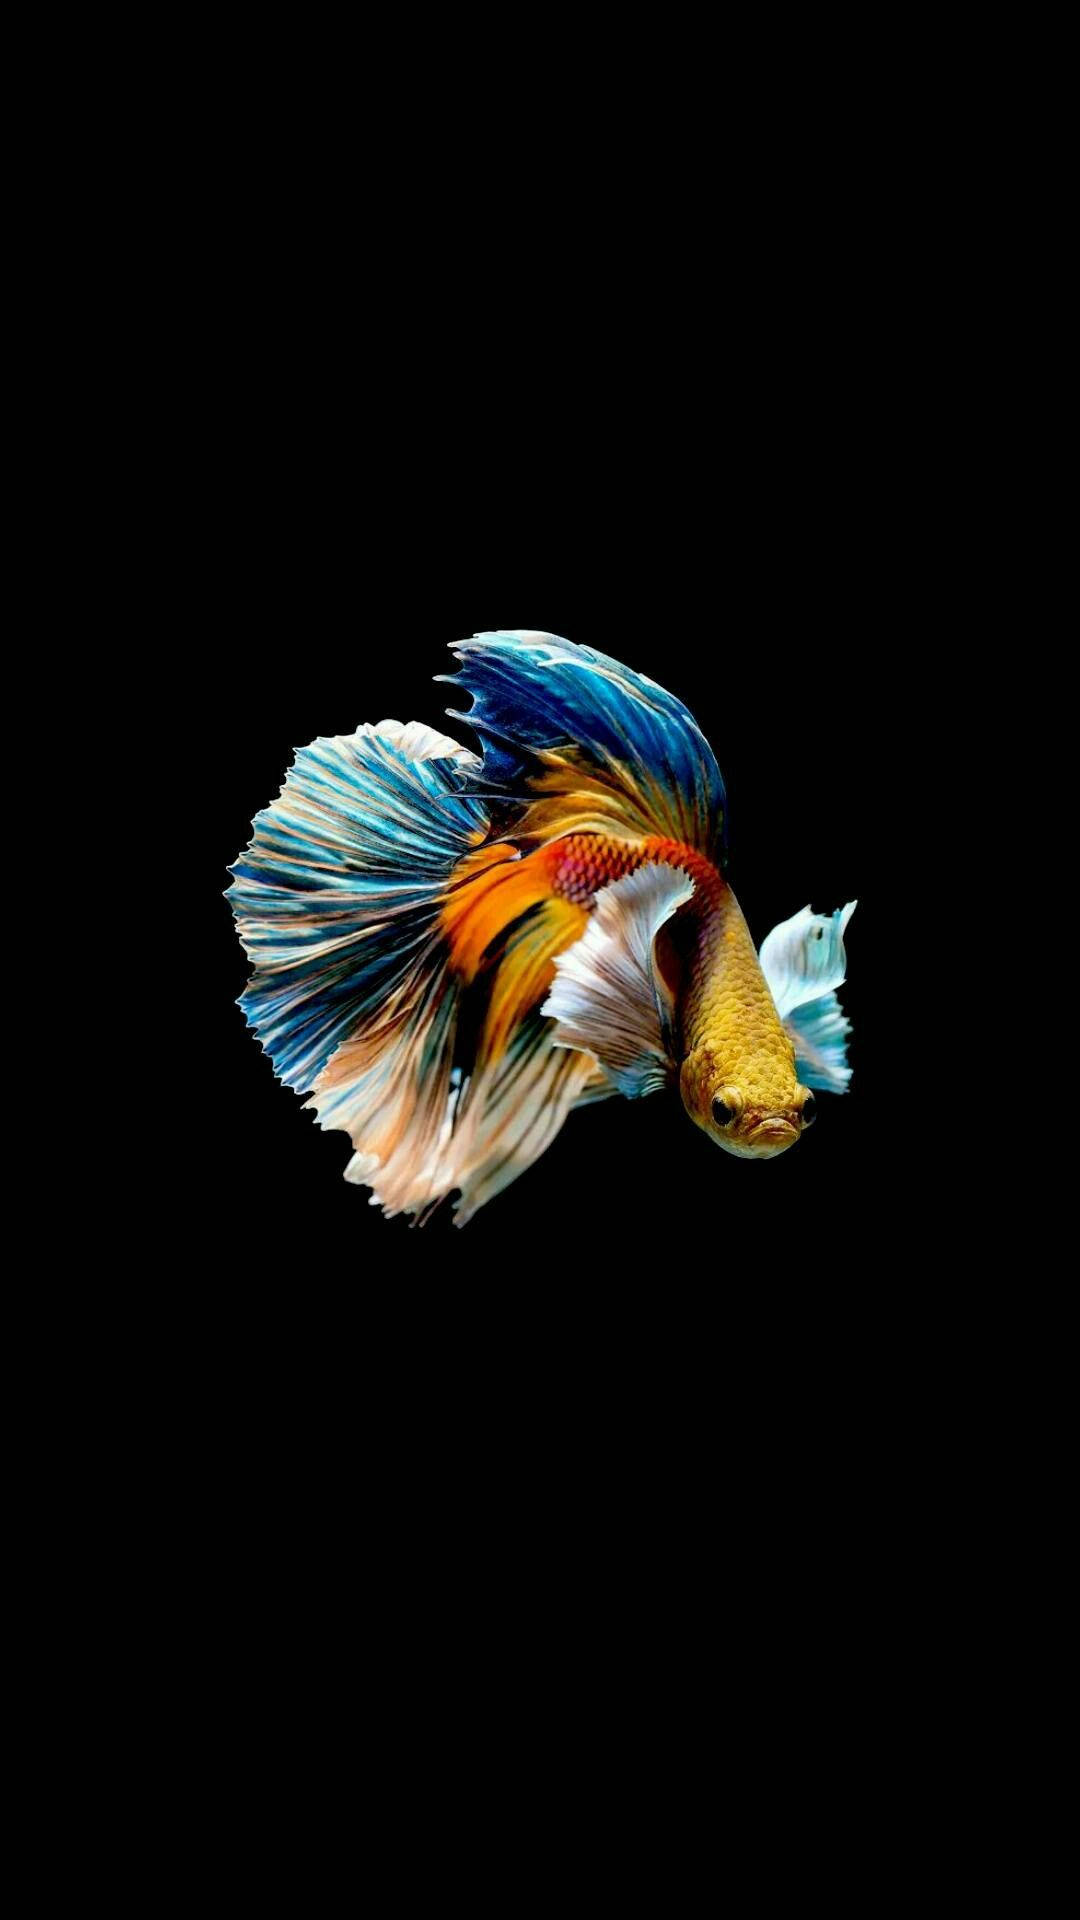 Bạn muốn có một hình nền đầy màu sắc cho chiếc iPhone của mình? Hãy truy cập và tải ngay những bức ảnh cá độc đáo, hợp với phong cách của bạn hoàn toàn miễn phí. Đảm bảo sẽ làm cho màn hình của bạn trở nên sống động và tươi sáng hơn bao giờ hết.